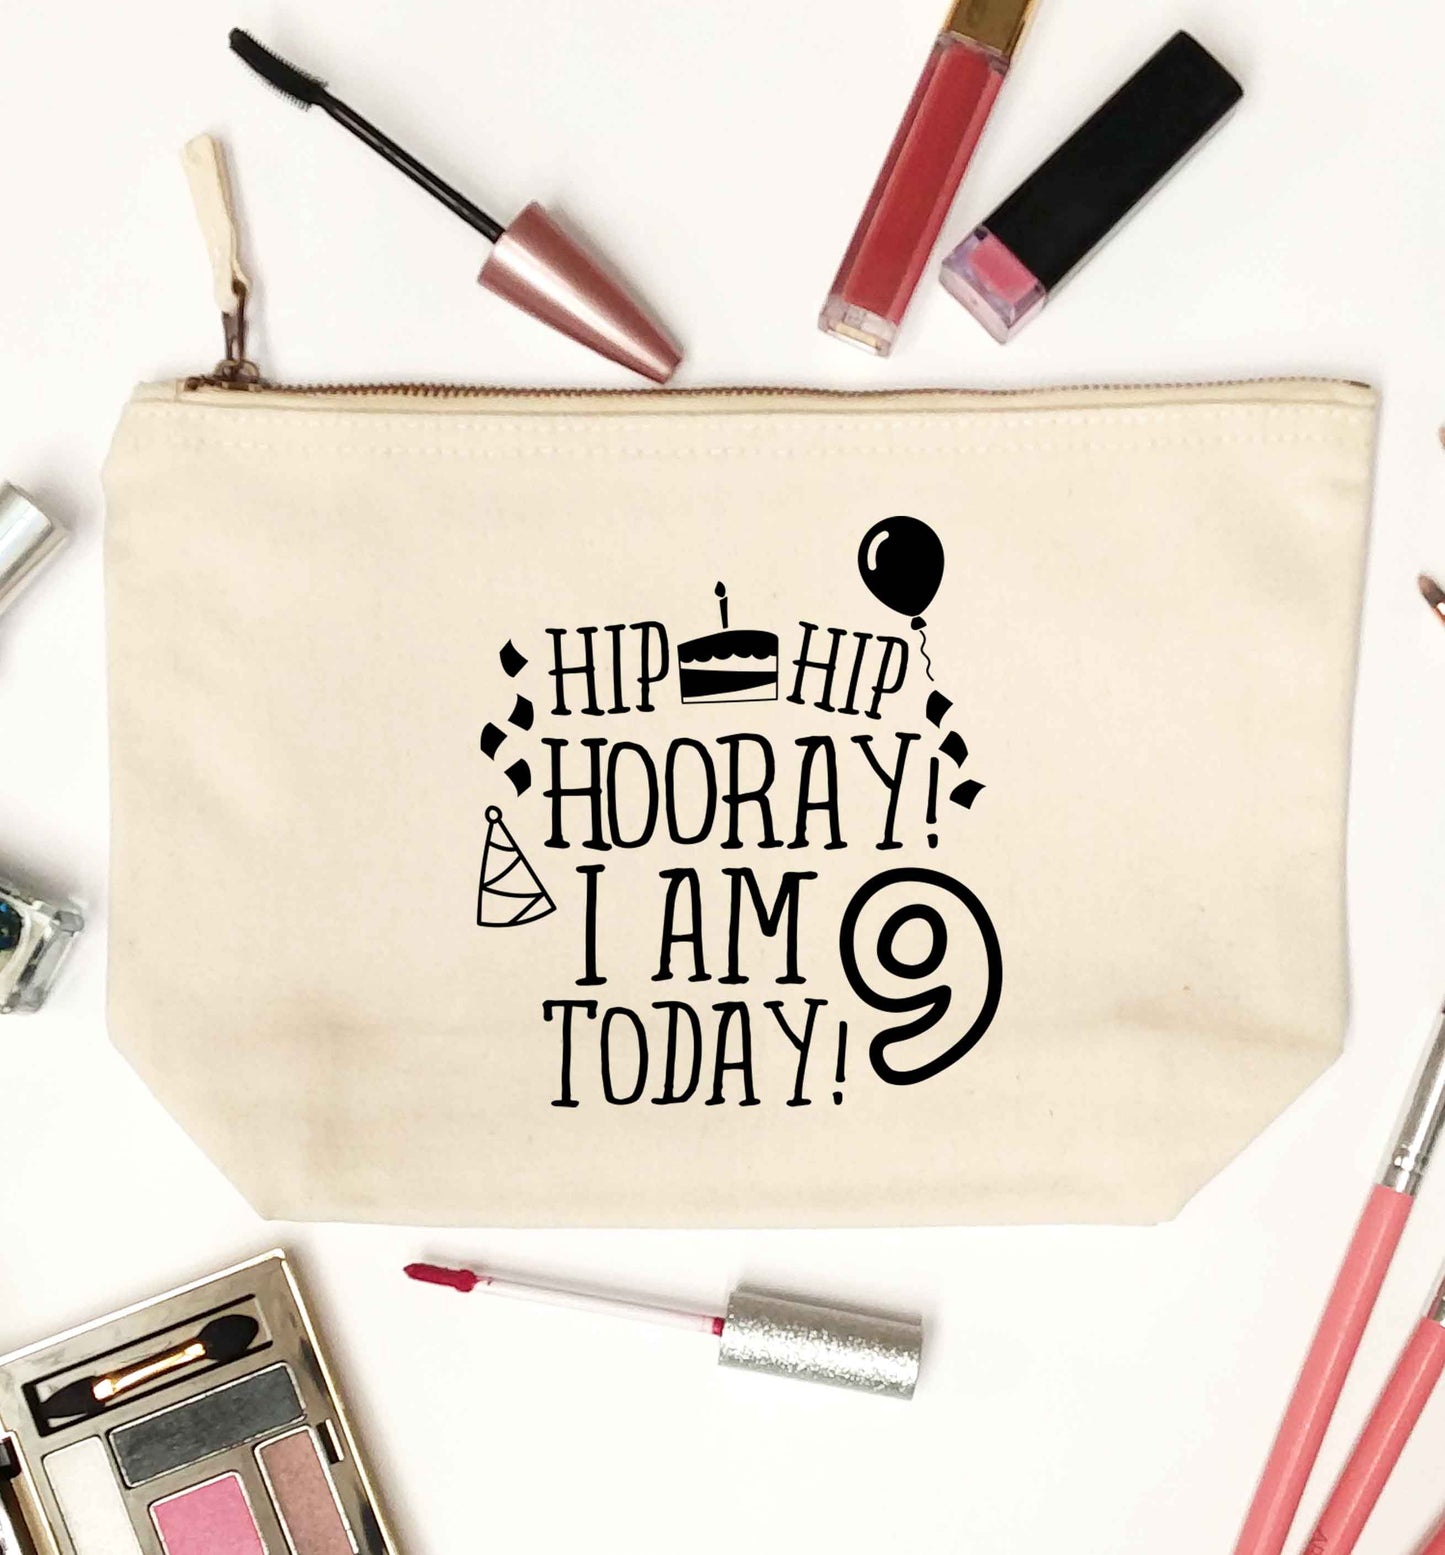 Hip hip hooray I am 9 today! natural makeup bag